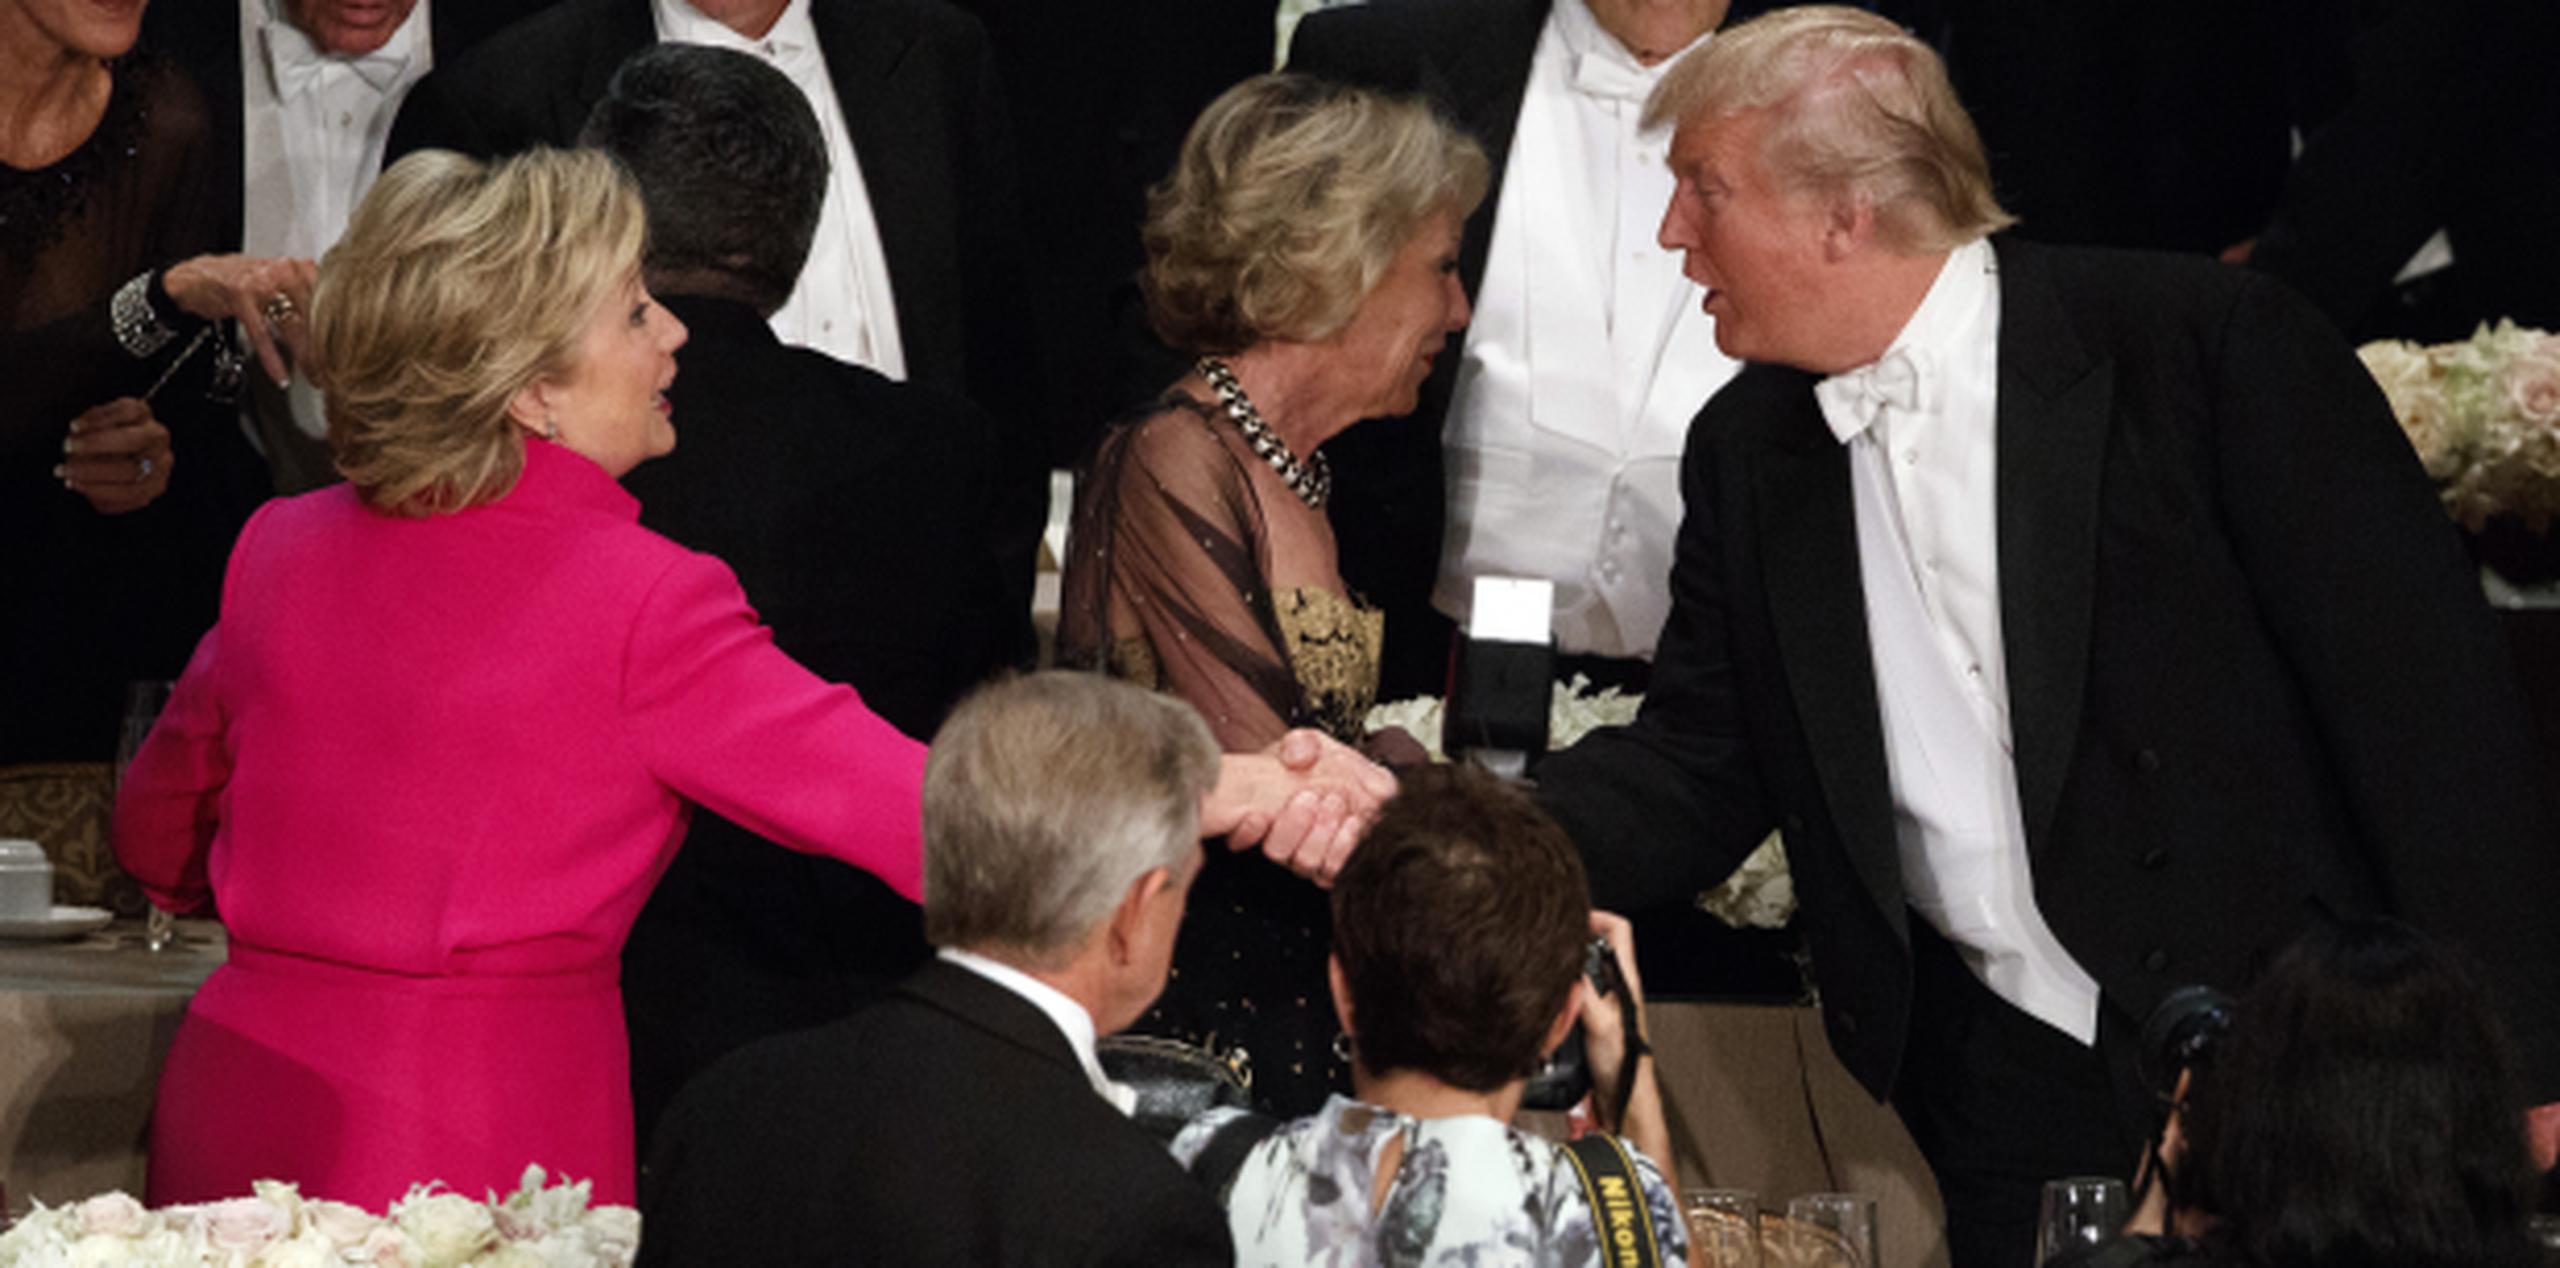 Clinton y Trump se dieron la mano en la cena, algo que no hicieron en los debates. (Prensa Asociada)